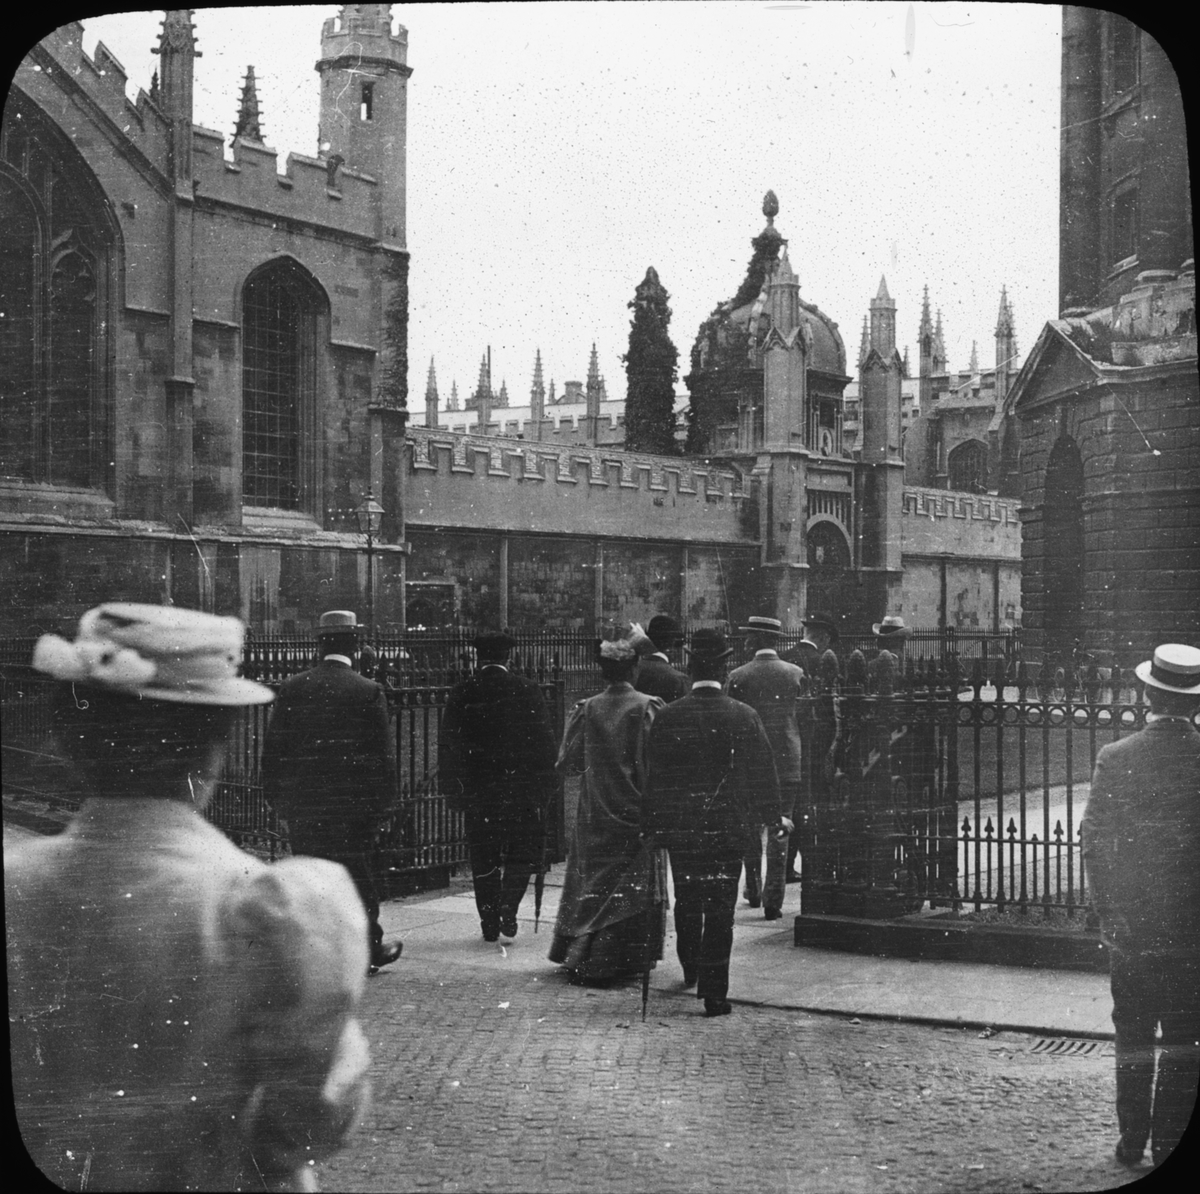 Skioptikonbild med motiv från Radcliffe Square, vy mot All Souls College, Oxford.
Bilden har förvarats i kartong märkt: Oxfrod 1906.